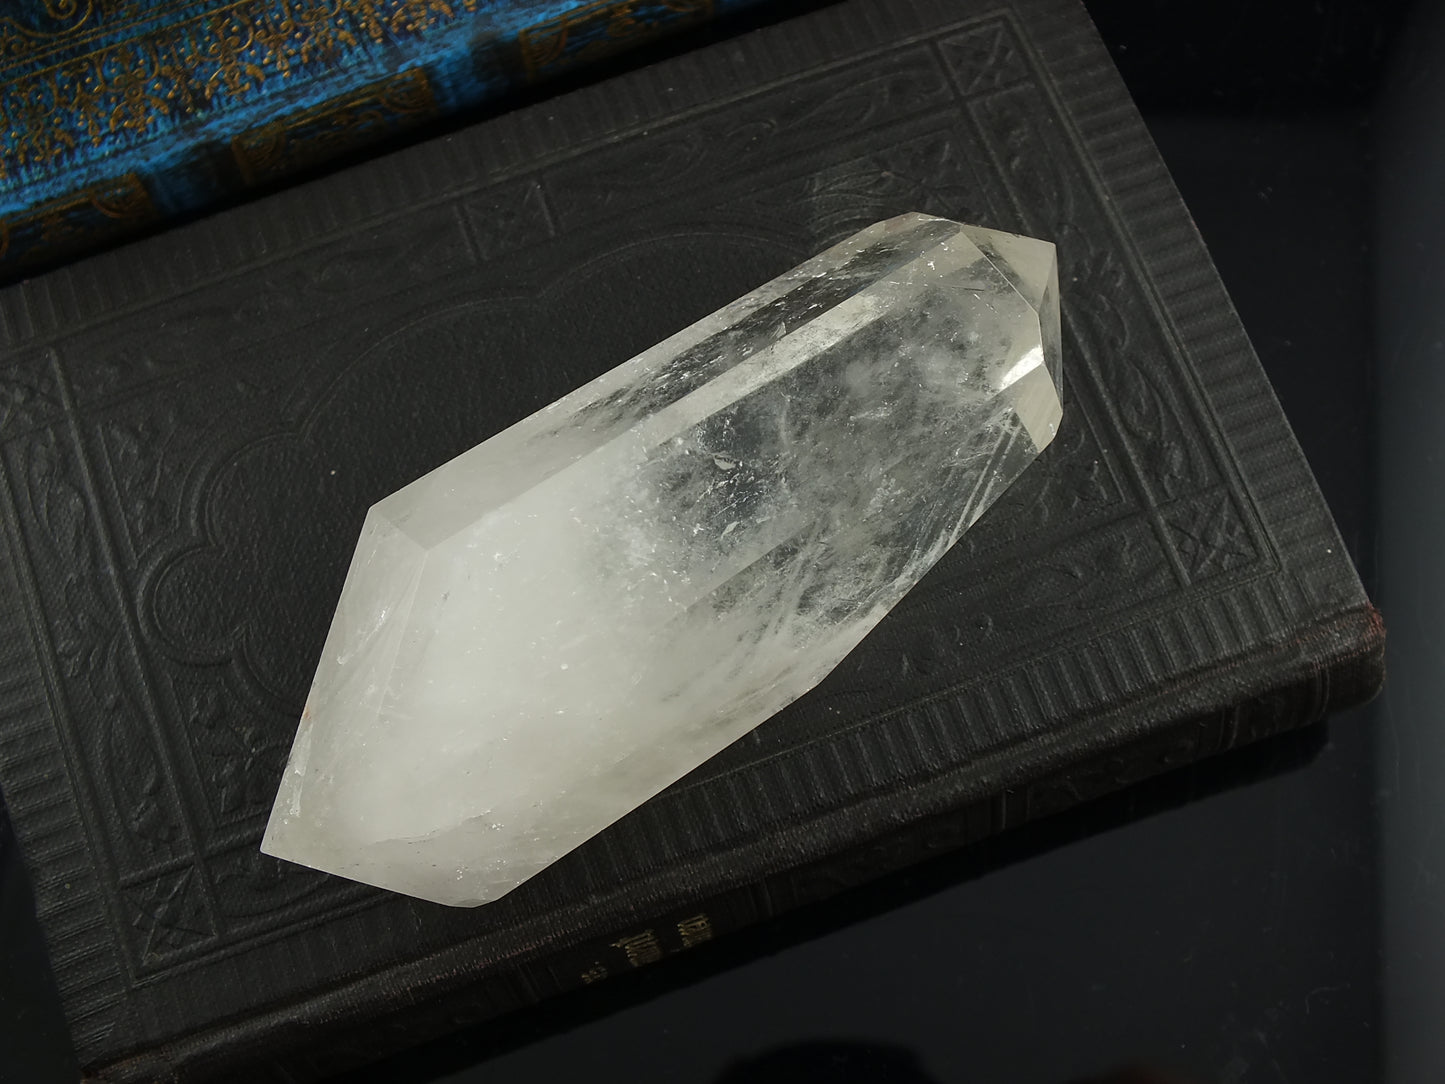 1 pointe de cristal de roche bi-terminée *D*